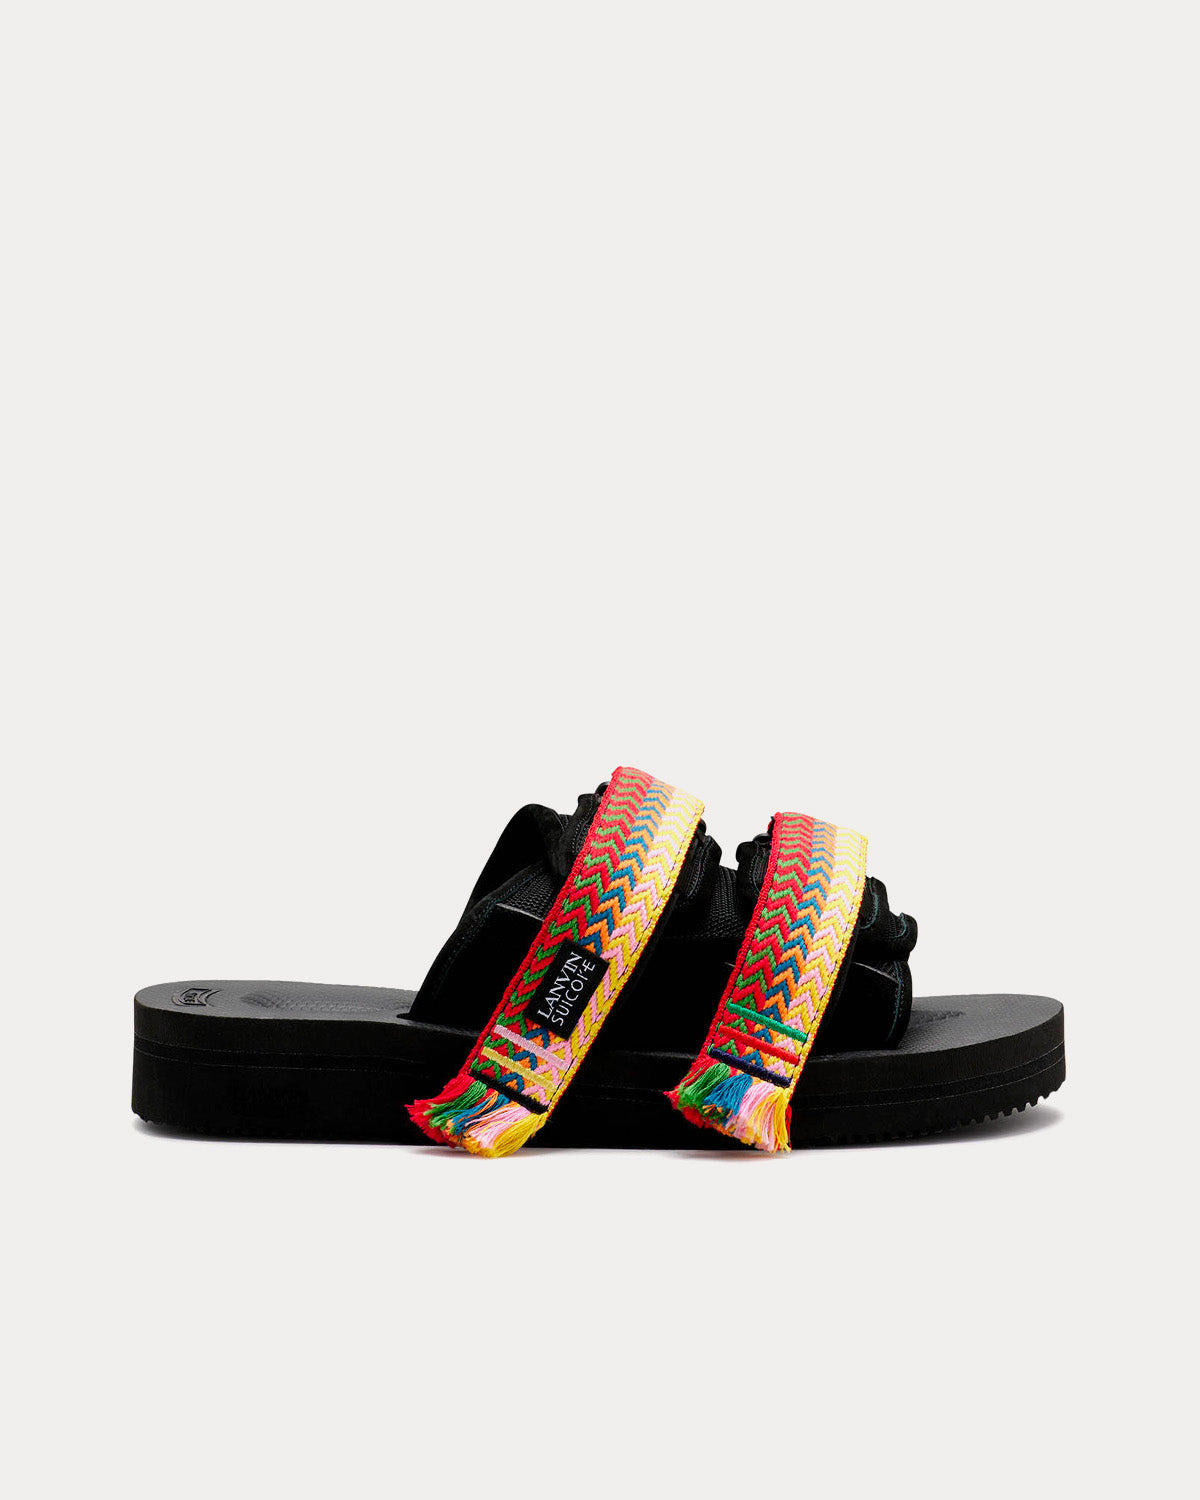 Lanvin x Suicoke - Black Nubuck Sandals